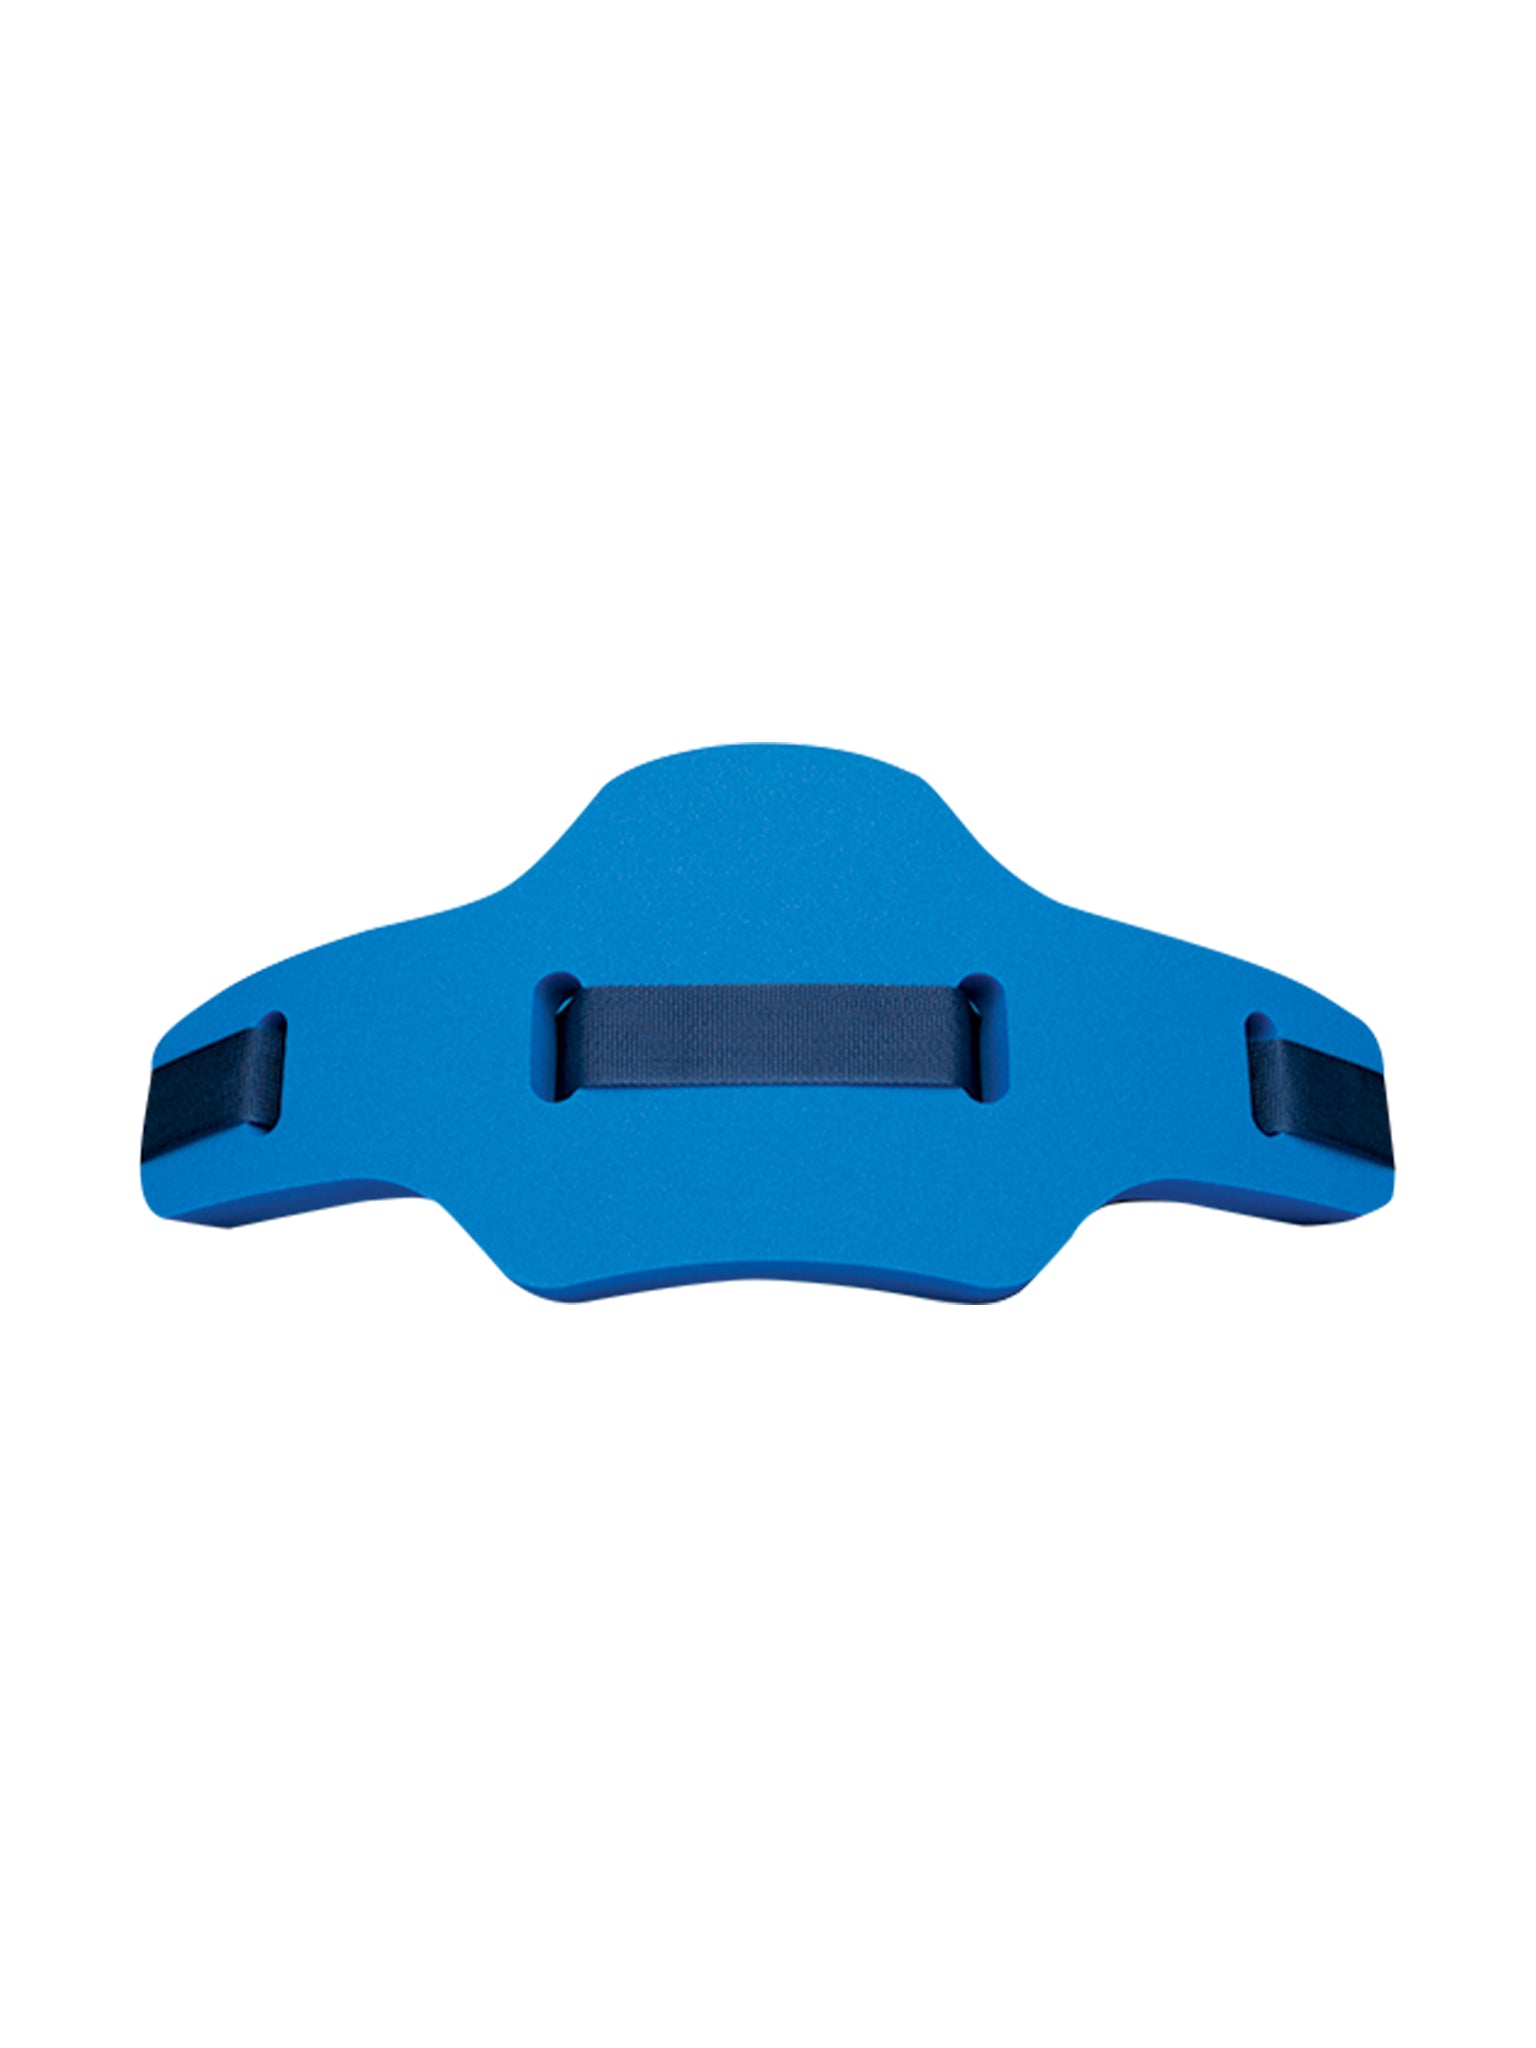 Atx 2000 Aquafitness Belt